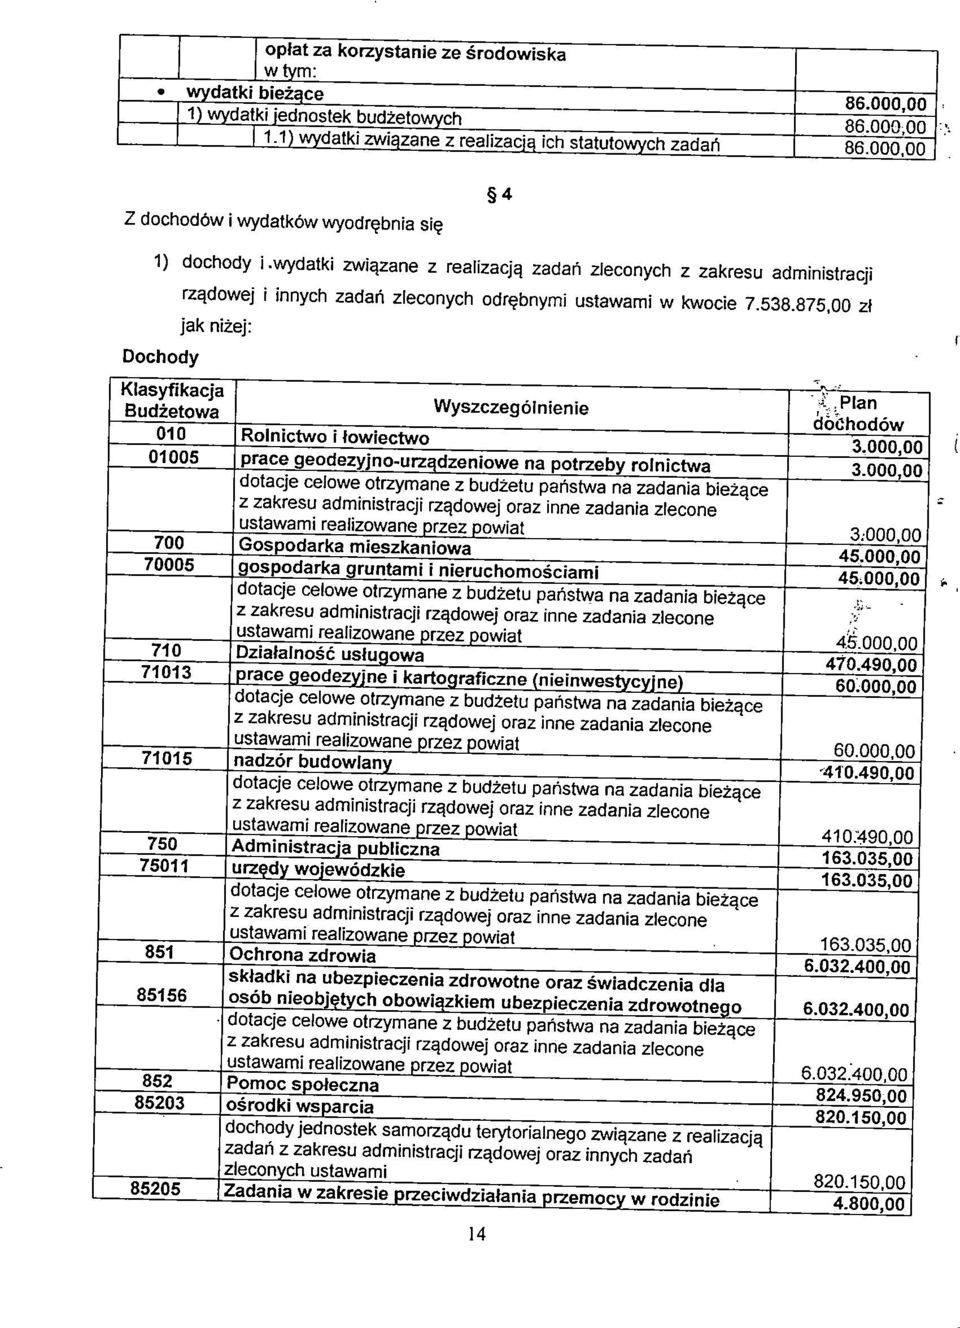 Plan Budżetowa dbchodów 010 Rolnictwo i łowiectwo 3.000,00 01005 prace geodezyjno-urzadzeniowe na potrzeby rolnictwa 3.